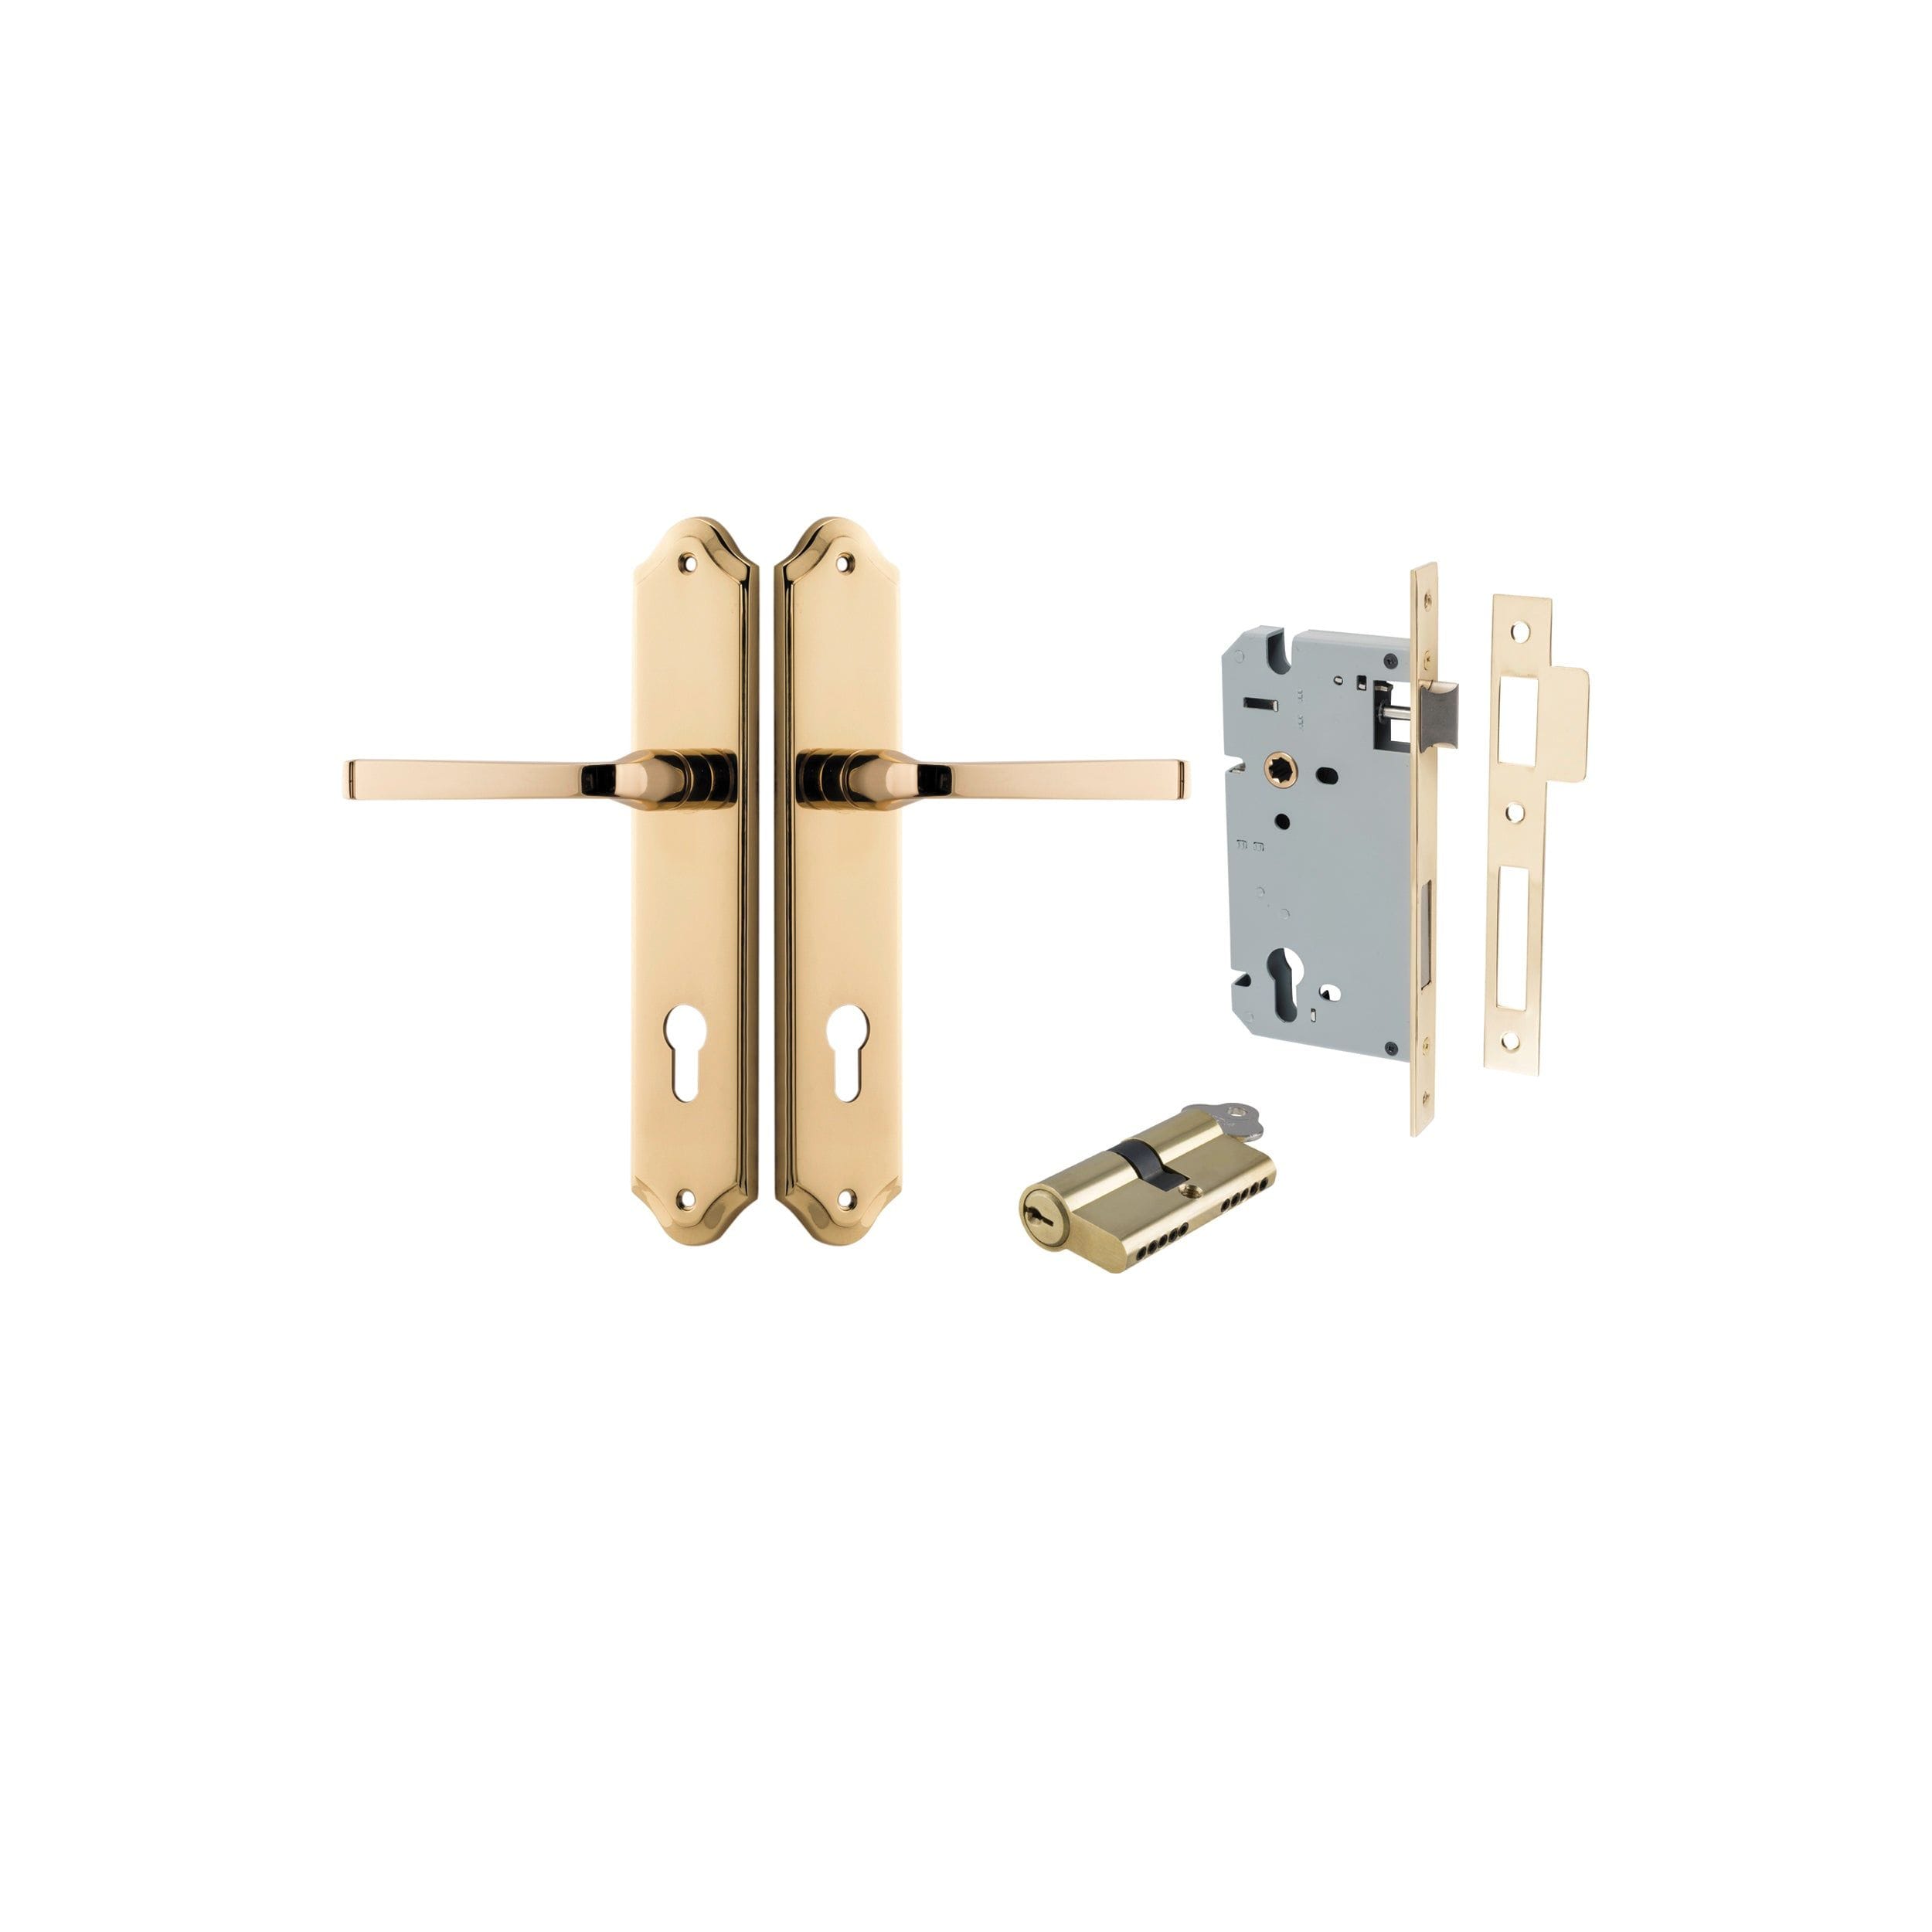 Annecy Lever Shouldered Polished Brass Entrance Kit - Key/Key